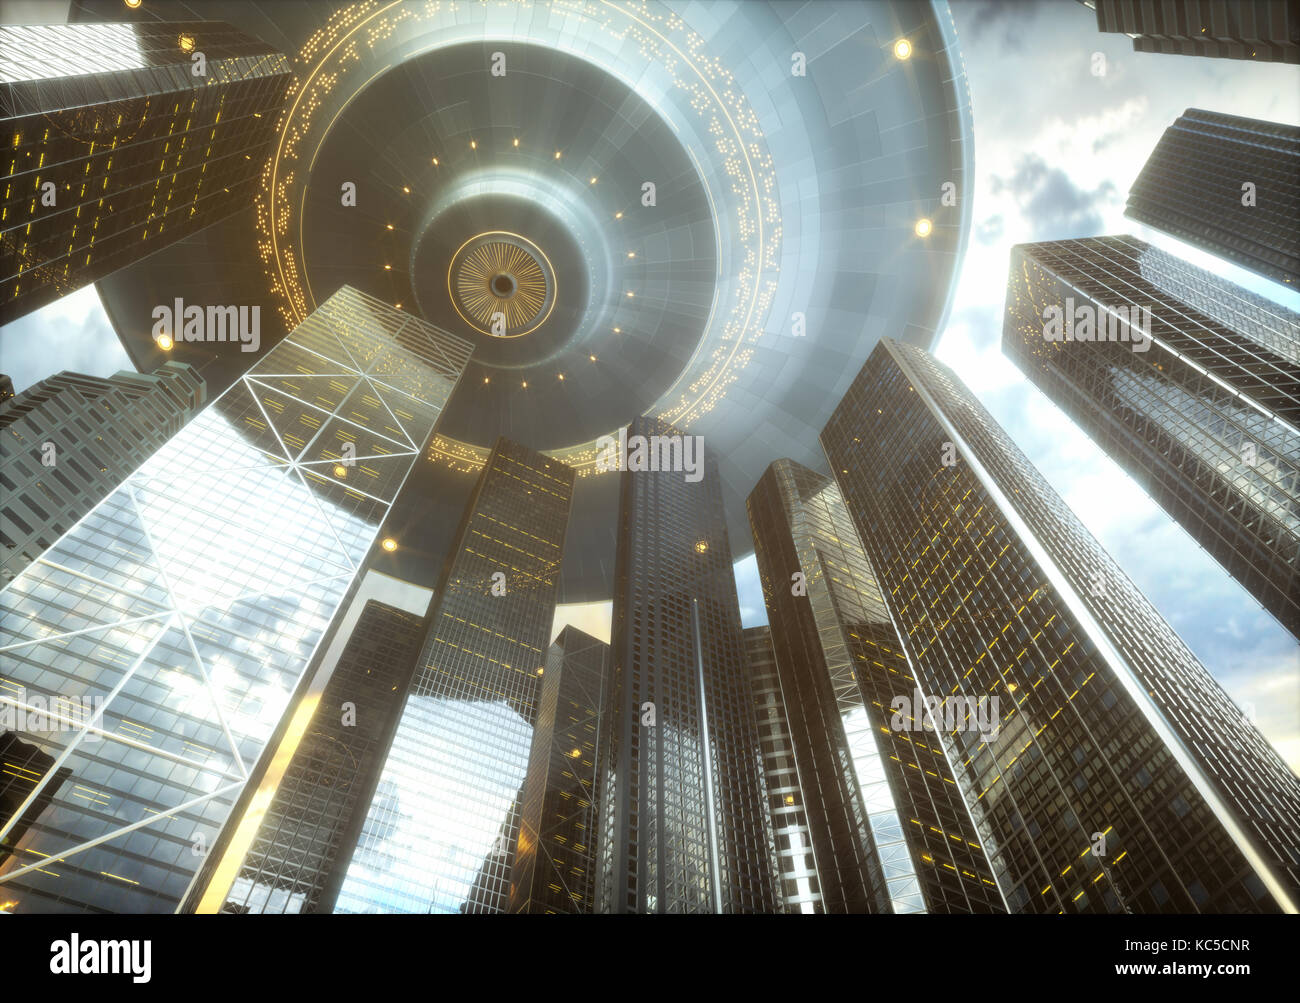 3d illustrazione. spazio nave aliena ufo, oltre grattacieli. immagine concettuale del ufology. Foto Stock